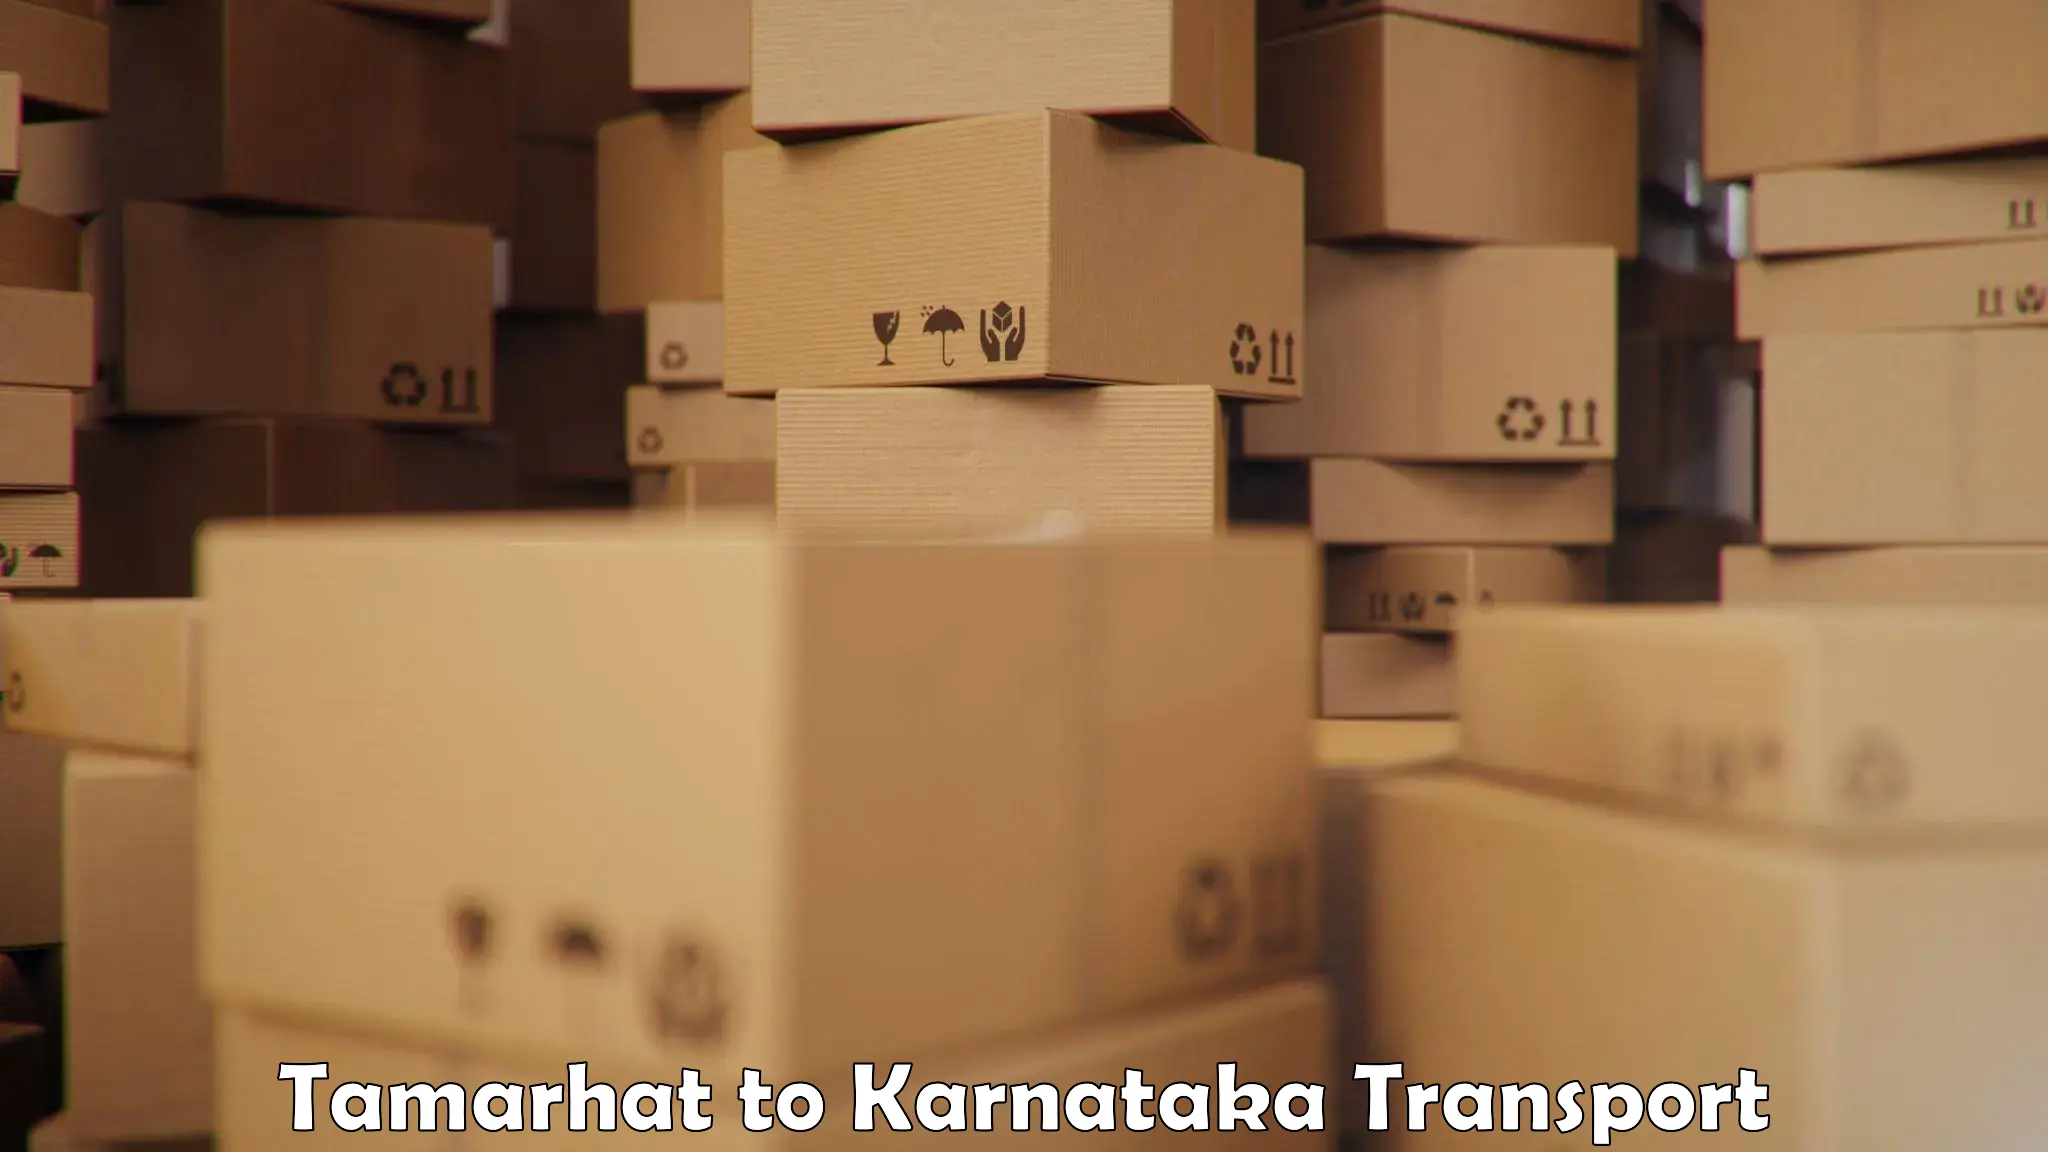 Pick up transport service Tamarhat to Hirekerur